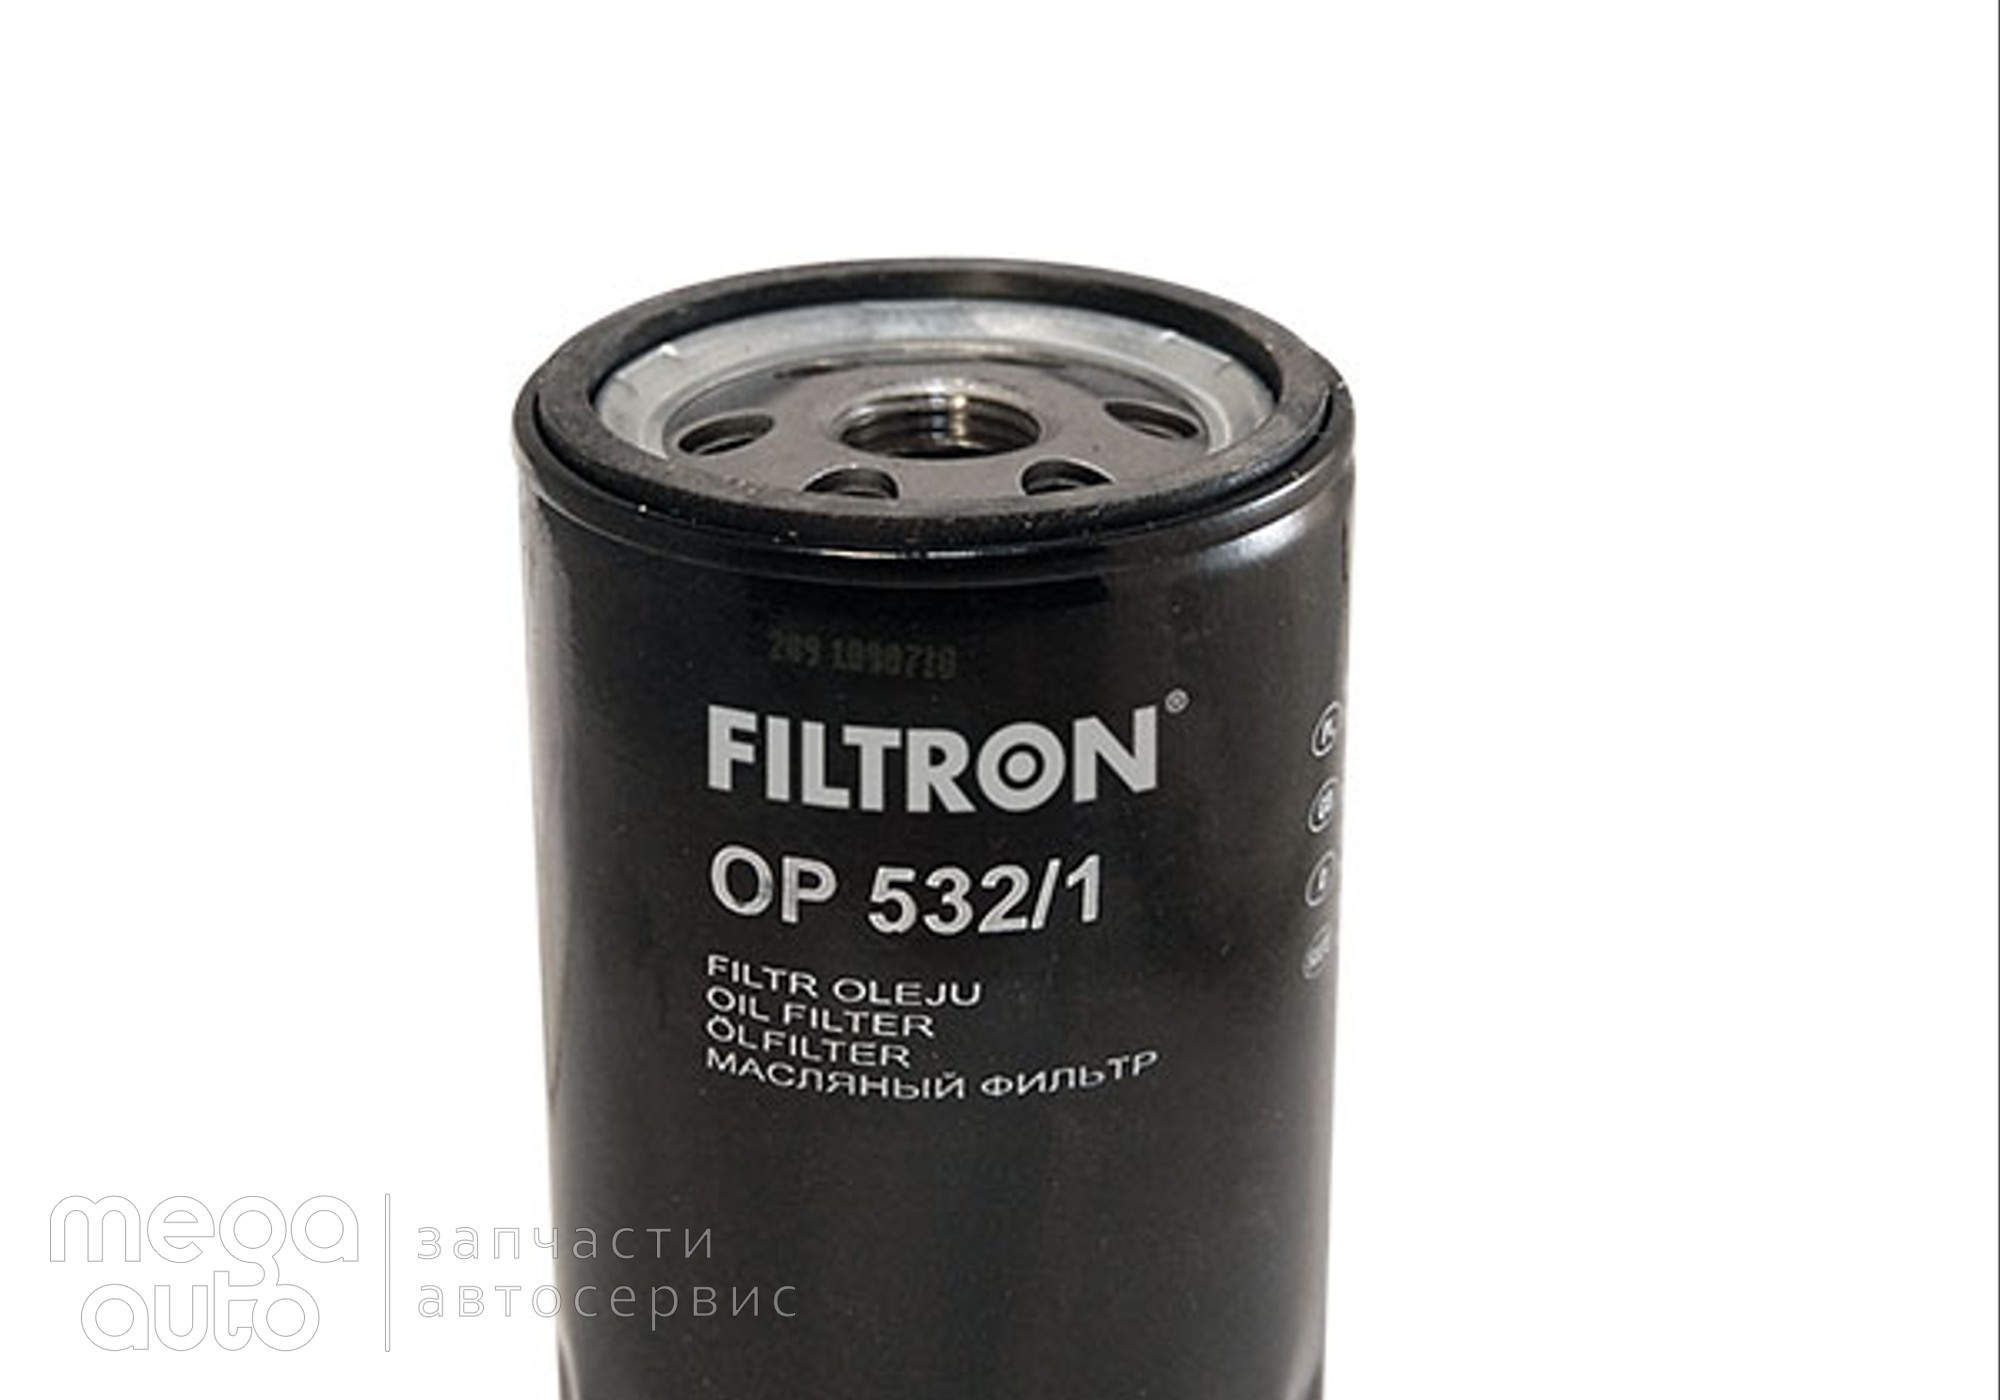 96565412 Масляный фильтр форд мондео, эскорт(Filtron) для Volkswagen Routan